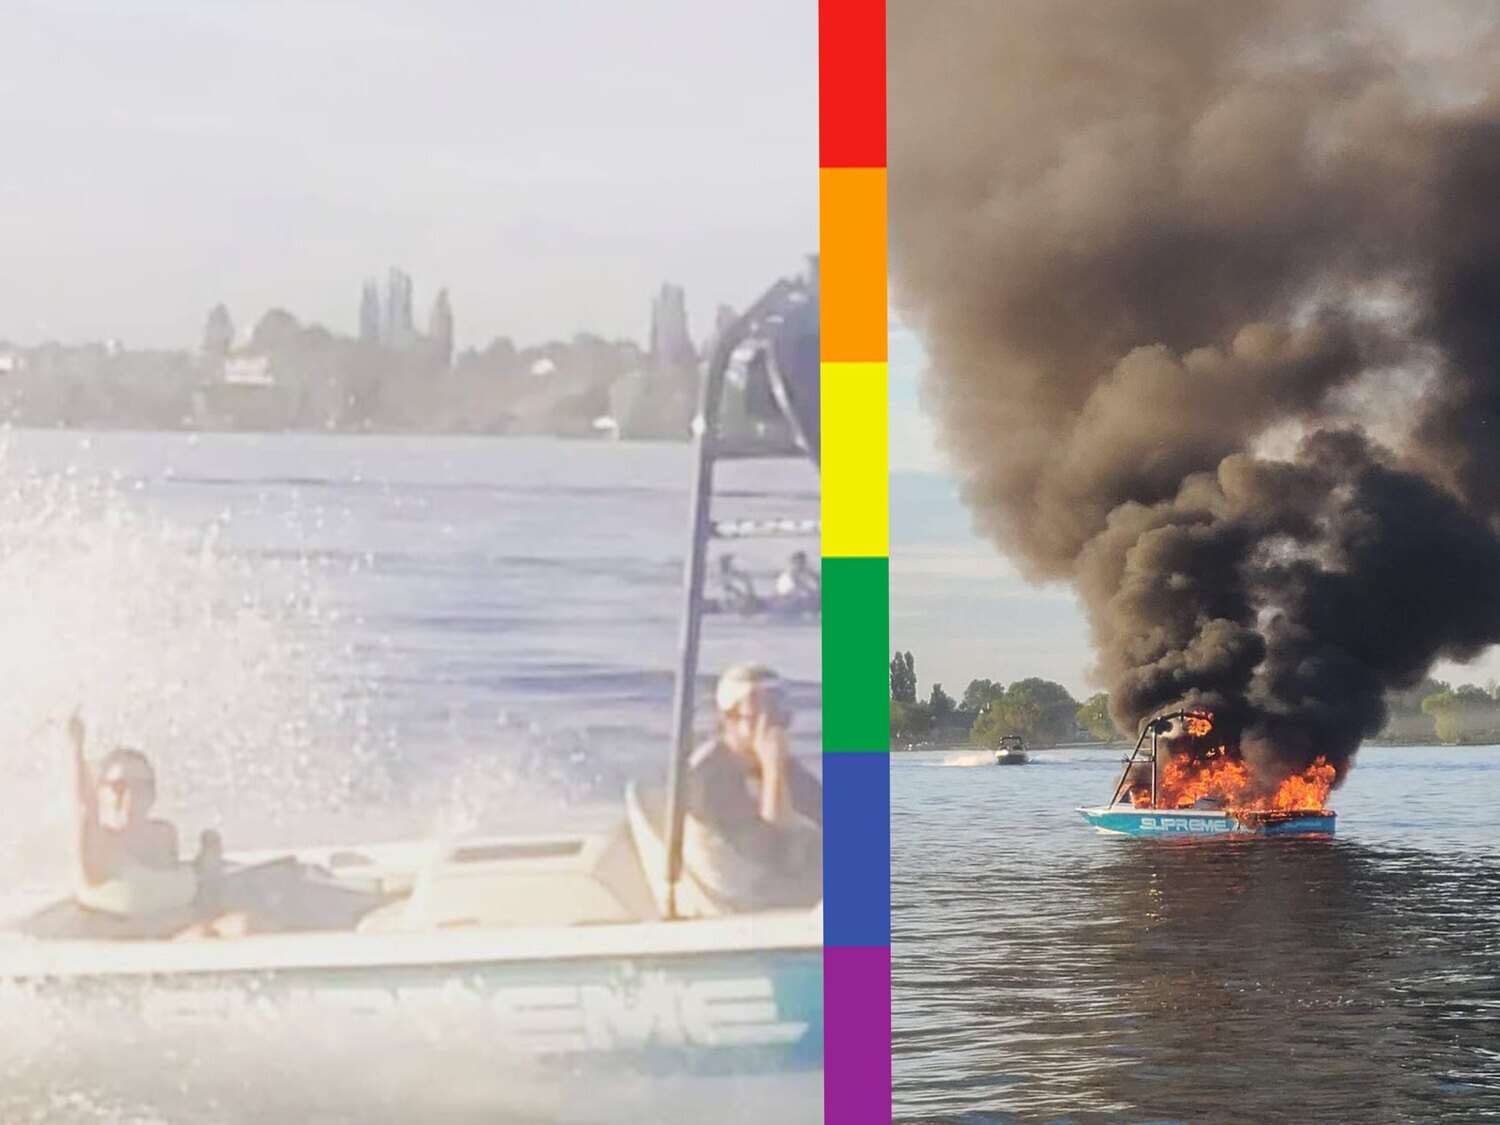 Los insultan y acosan por llevar la bandera LGTBI y acaban salvándoles la vida en un lago